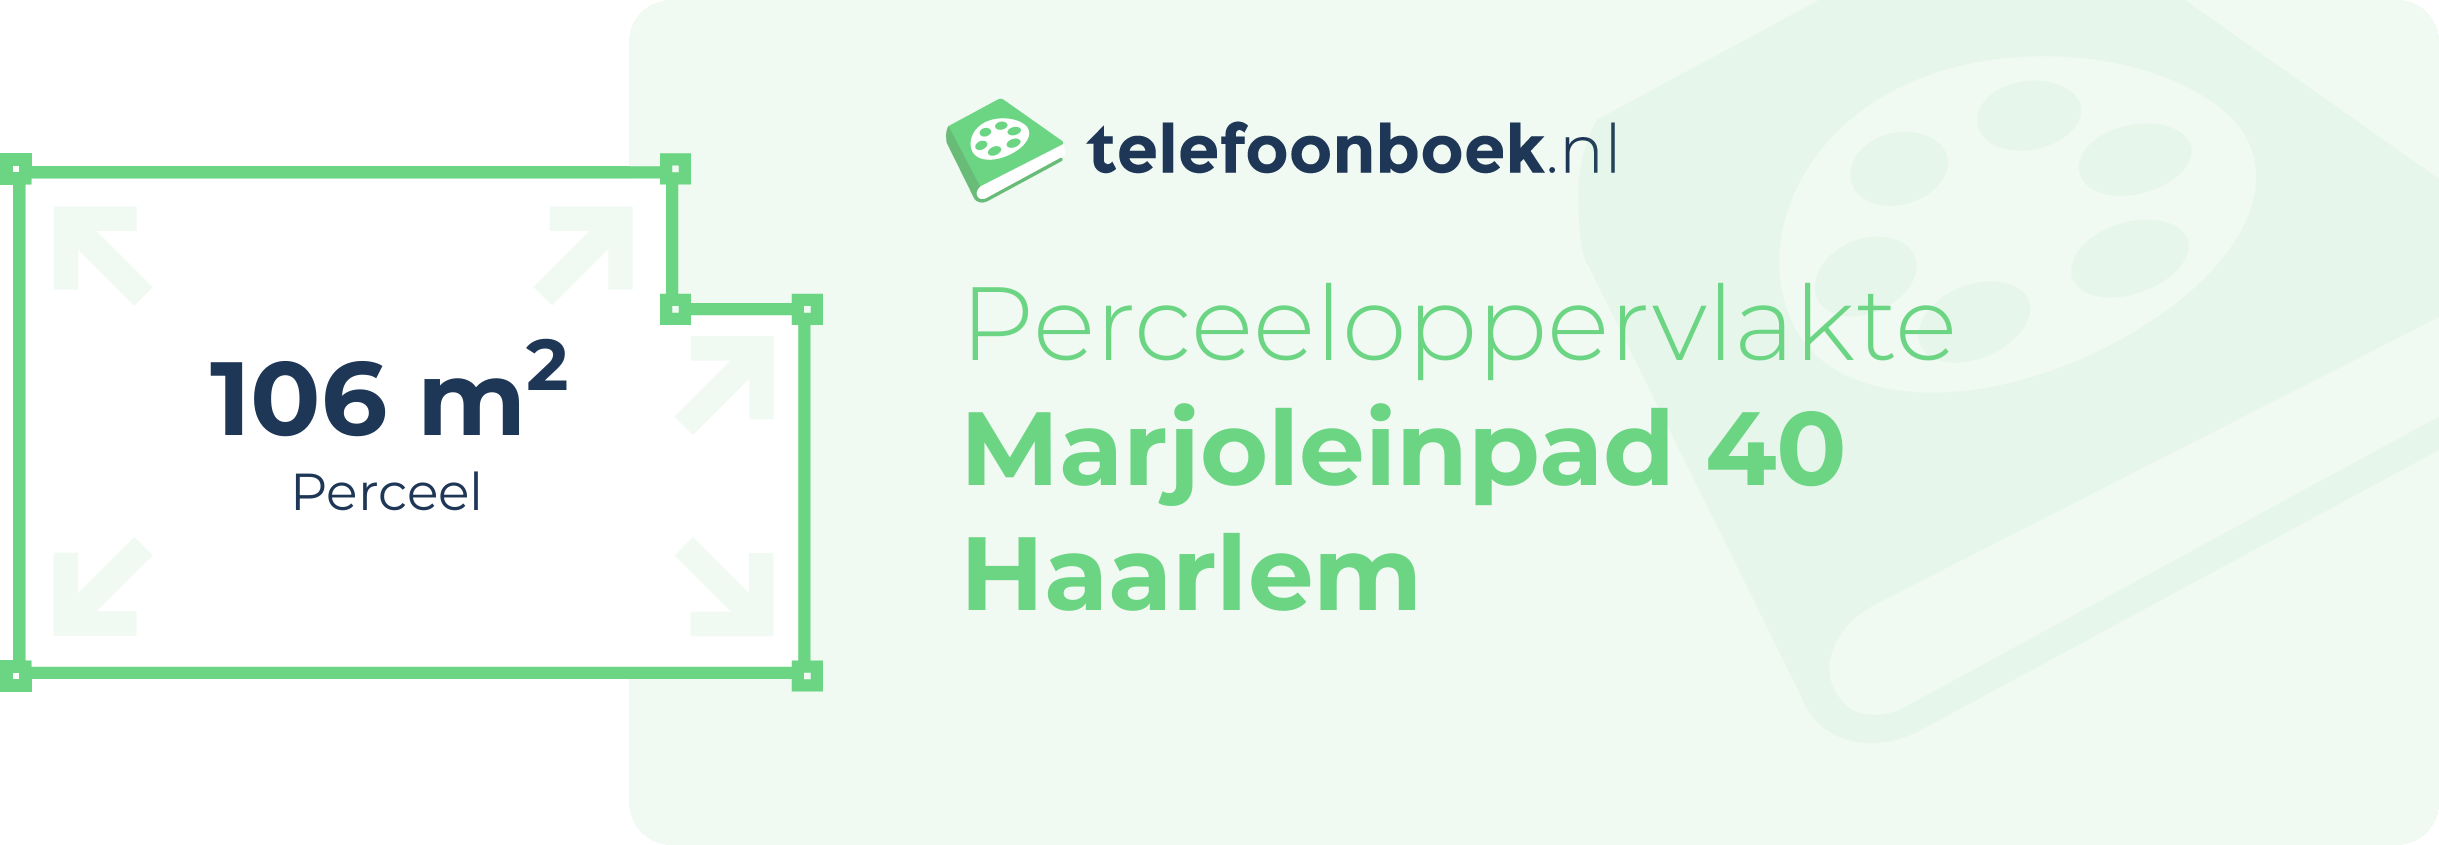 Perceeloppervlakte Marjoleinpad 40 Haarlem